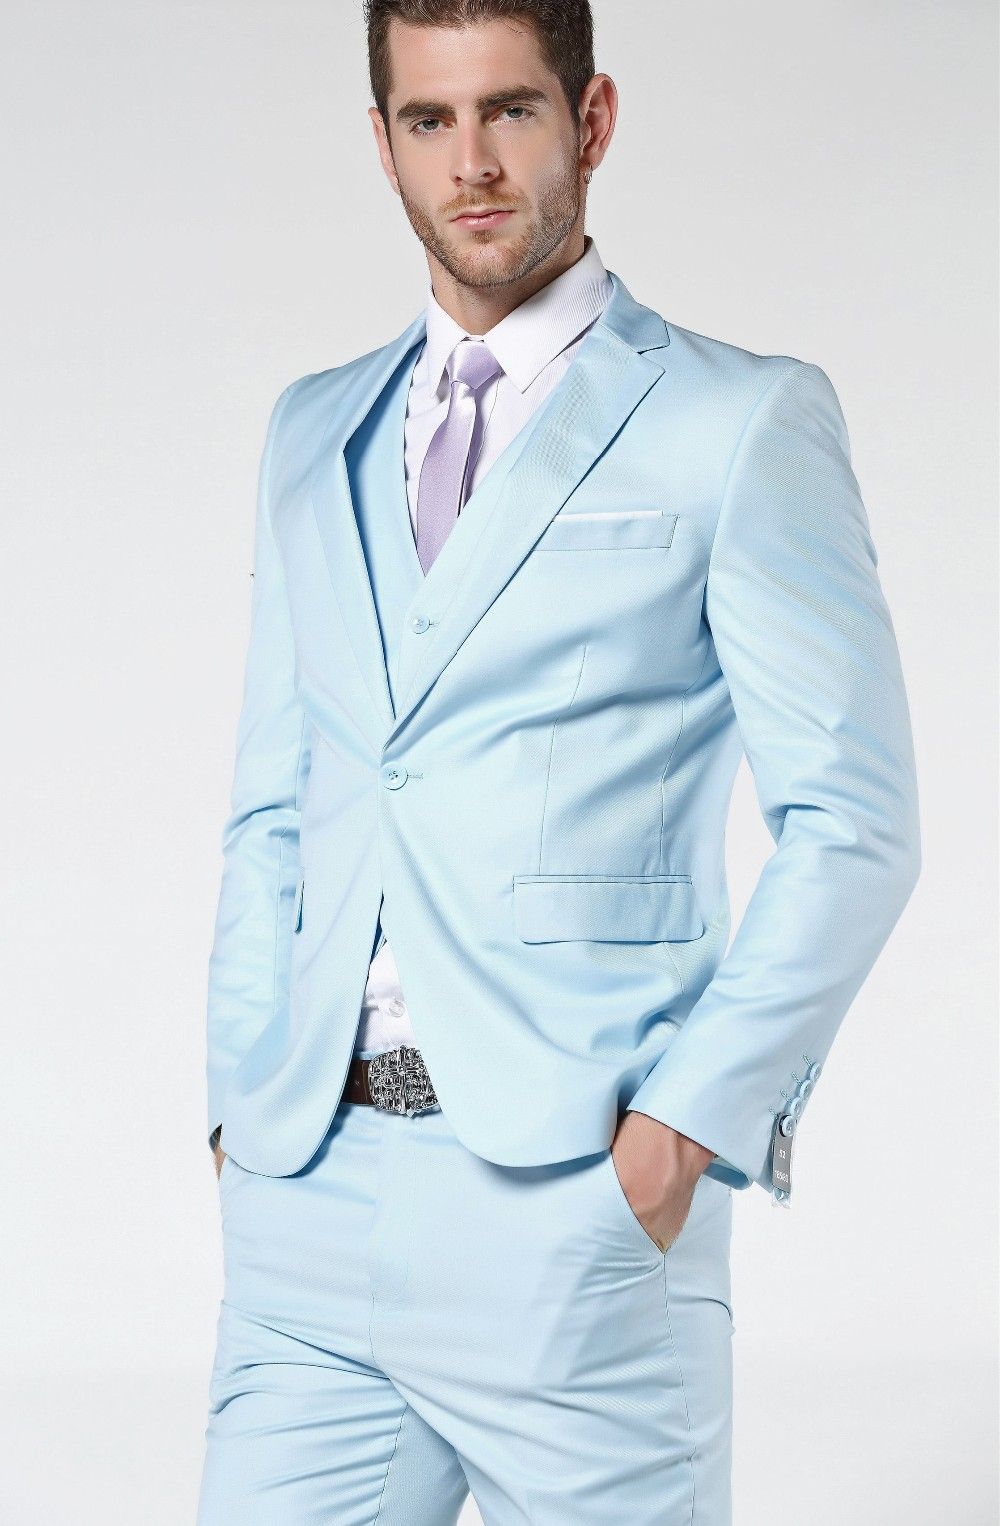 MOGU 2017 New Arrival Mens Suits Light Blue Wedding Suits